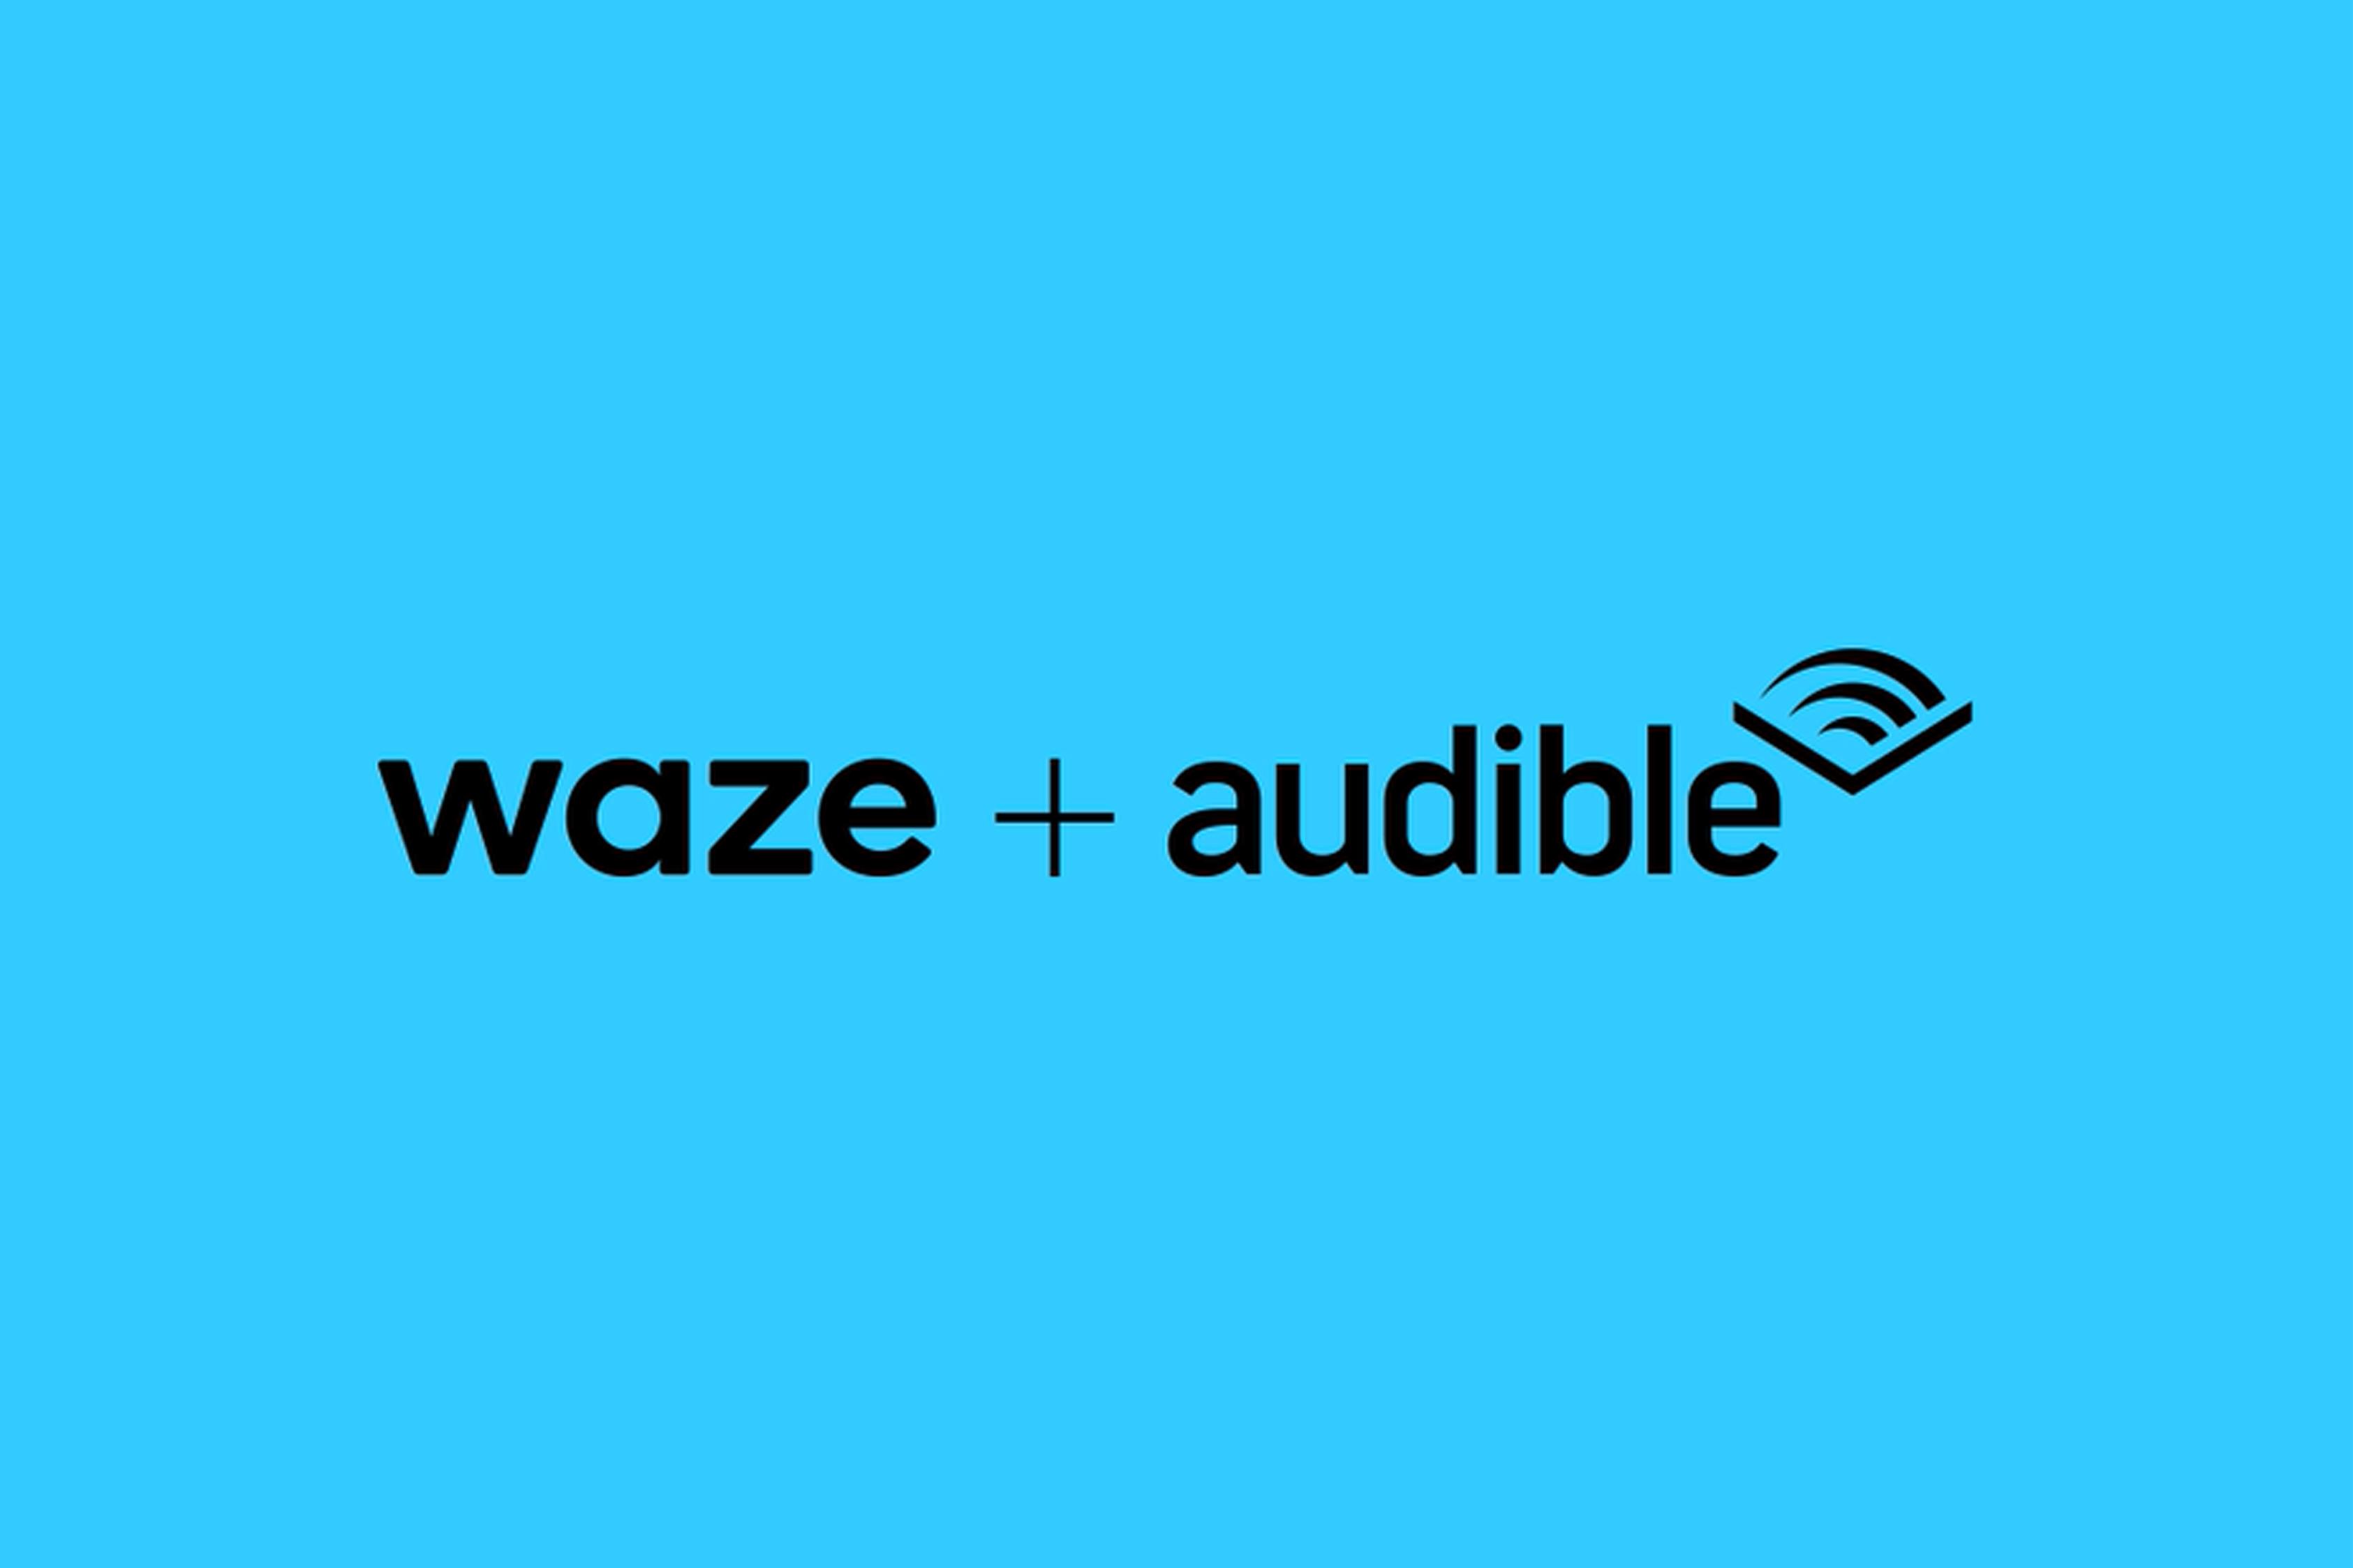 Un'immagine che mostra i loghi Waze e Audible neri su uno sfondo blu brillante